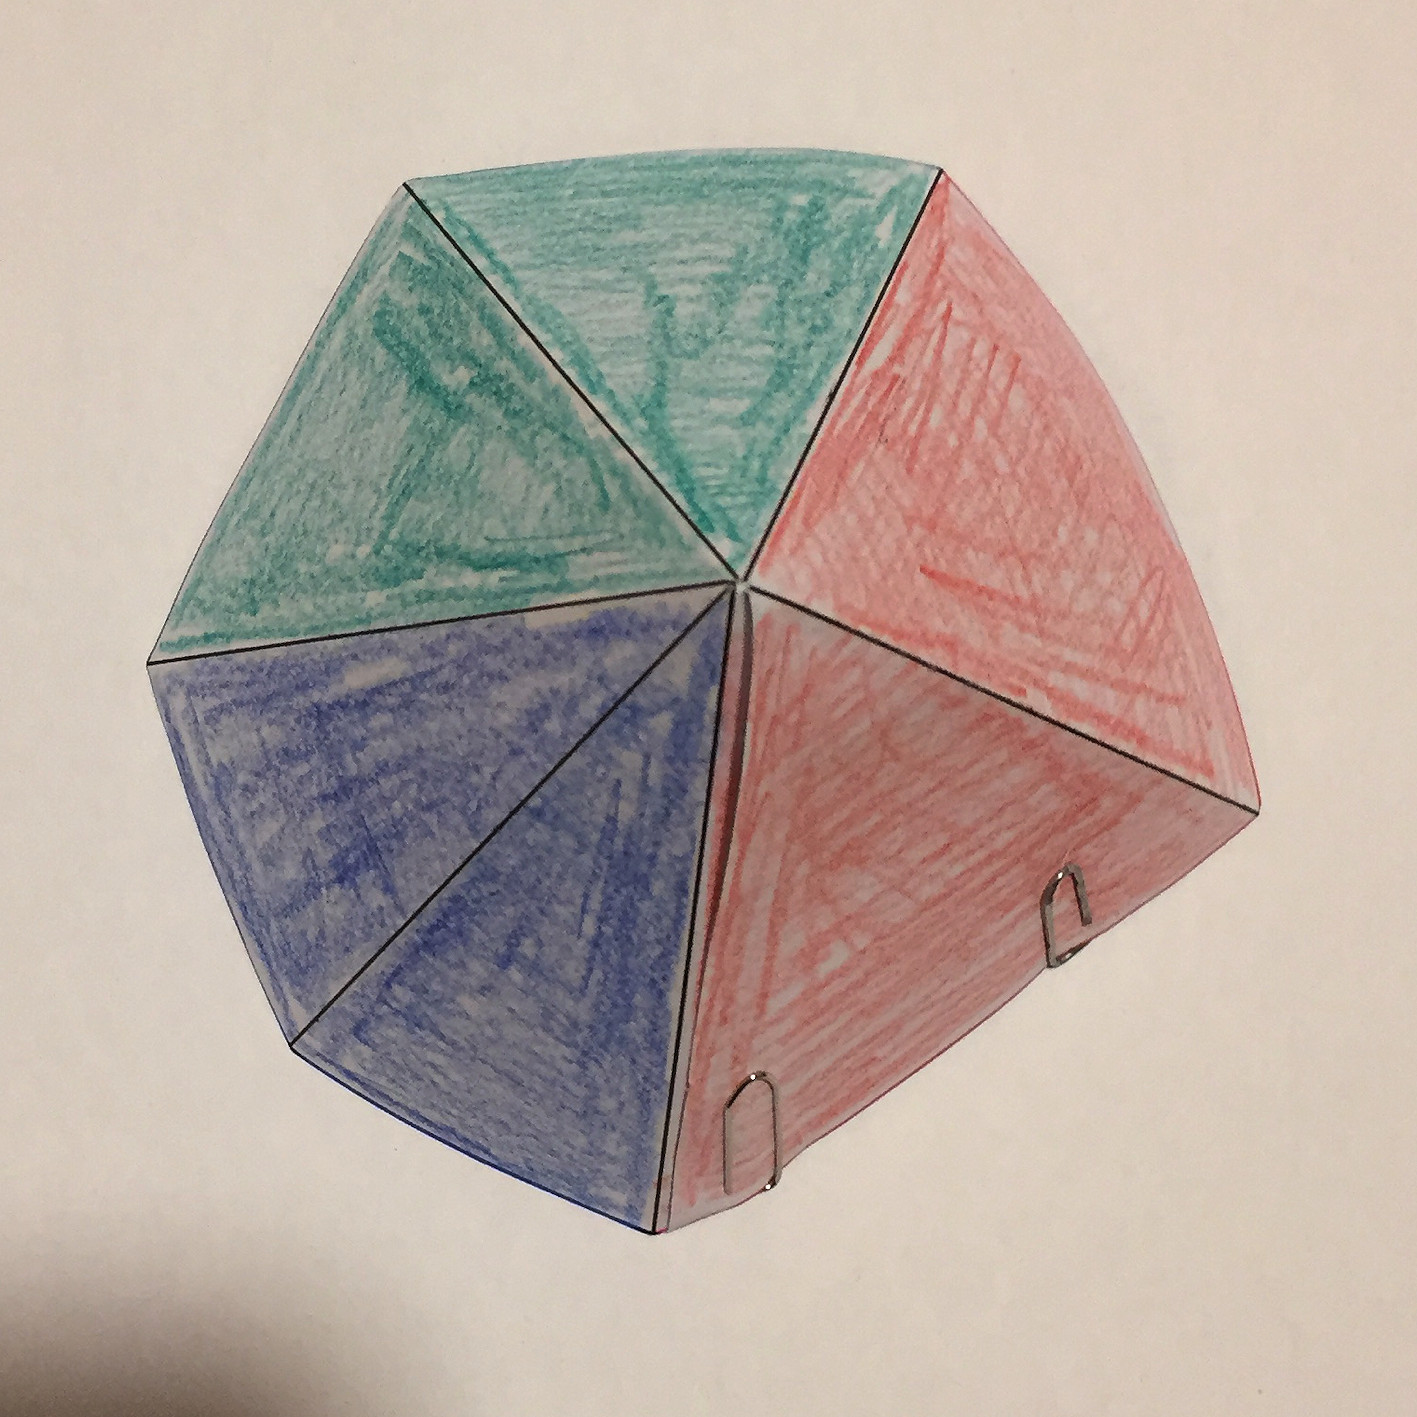 Ein Bild, das Zubehör, Origami enthält.

Automatisch generierte Beschreibung